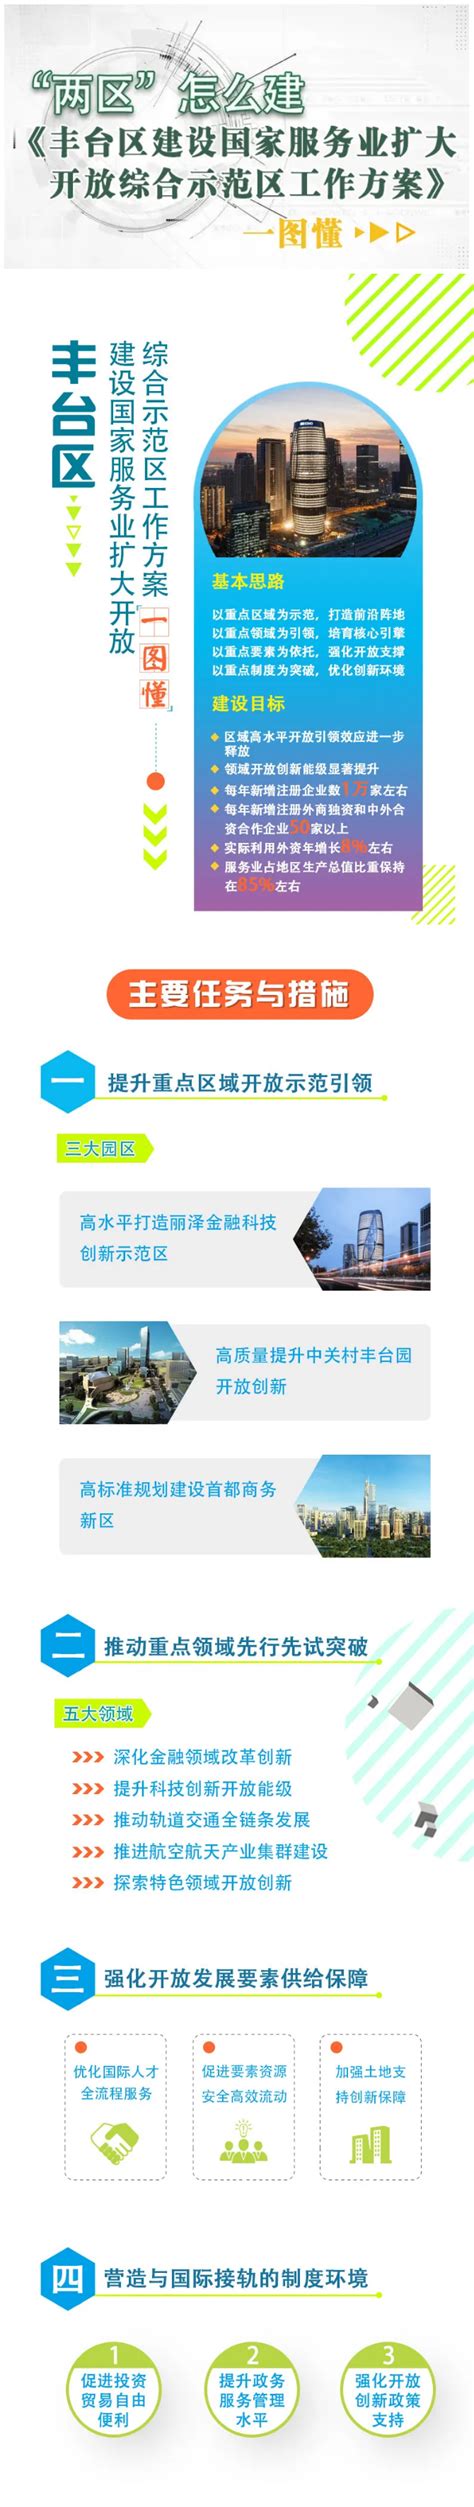 丰台分区规划（2017年-2035年）内容获市政府批复- 北京本地宝